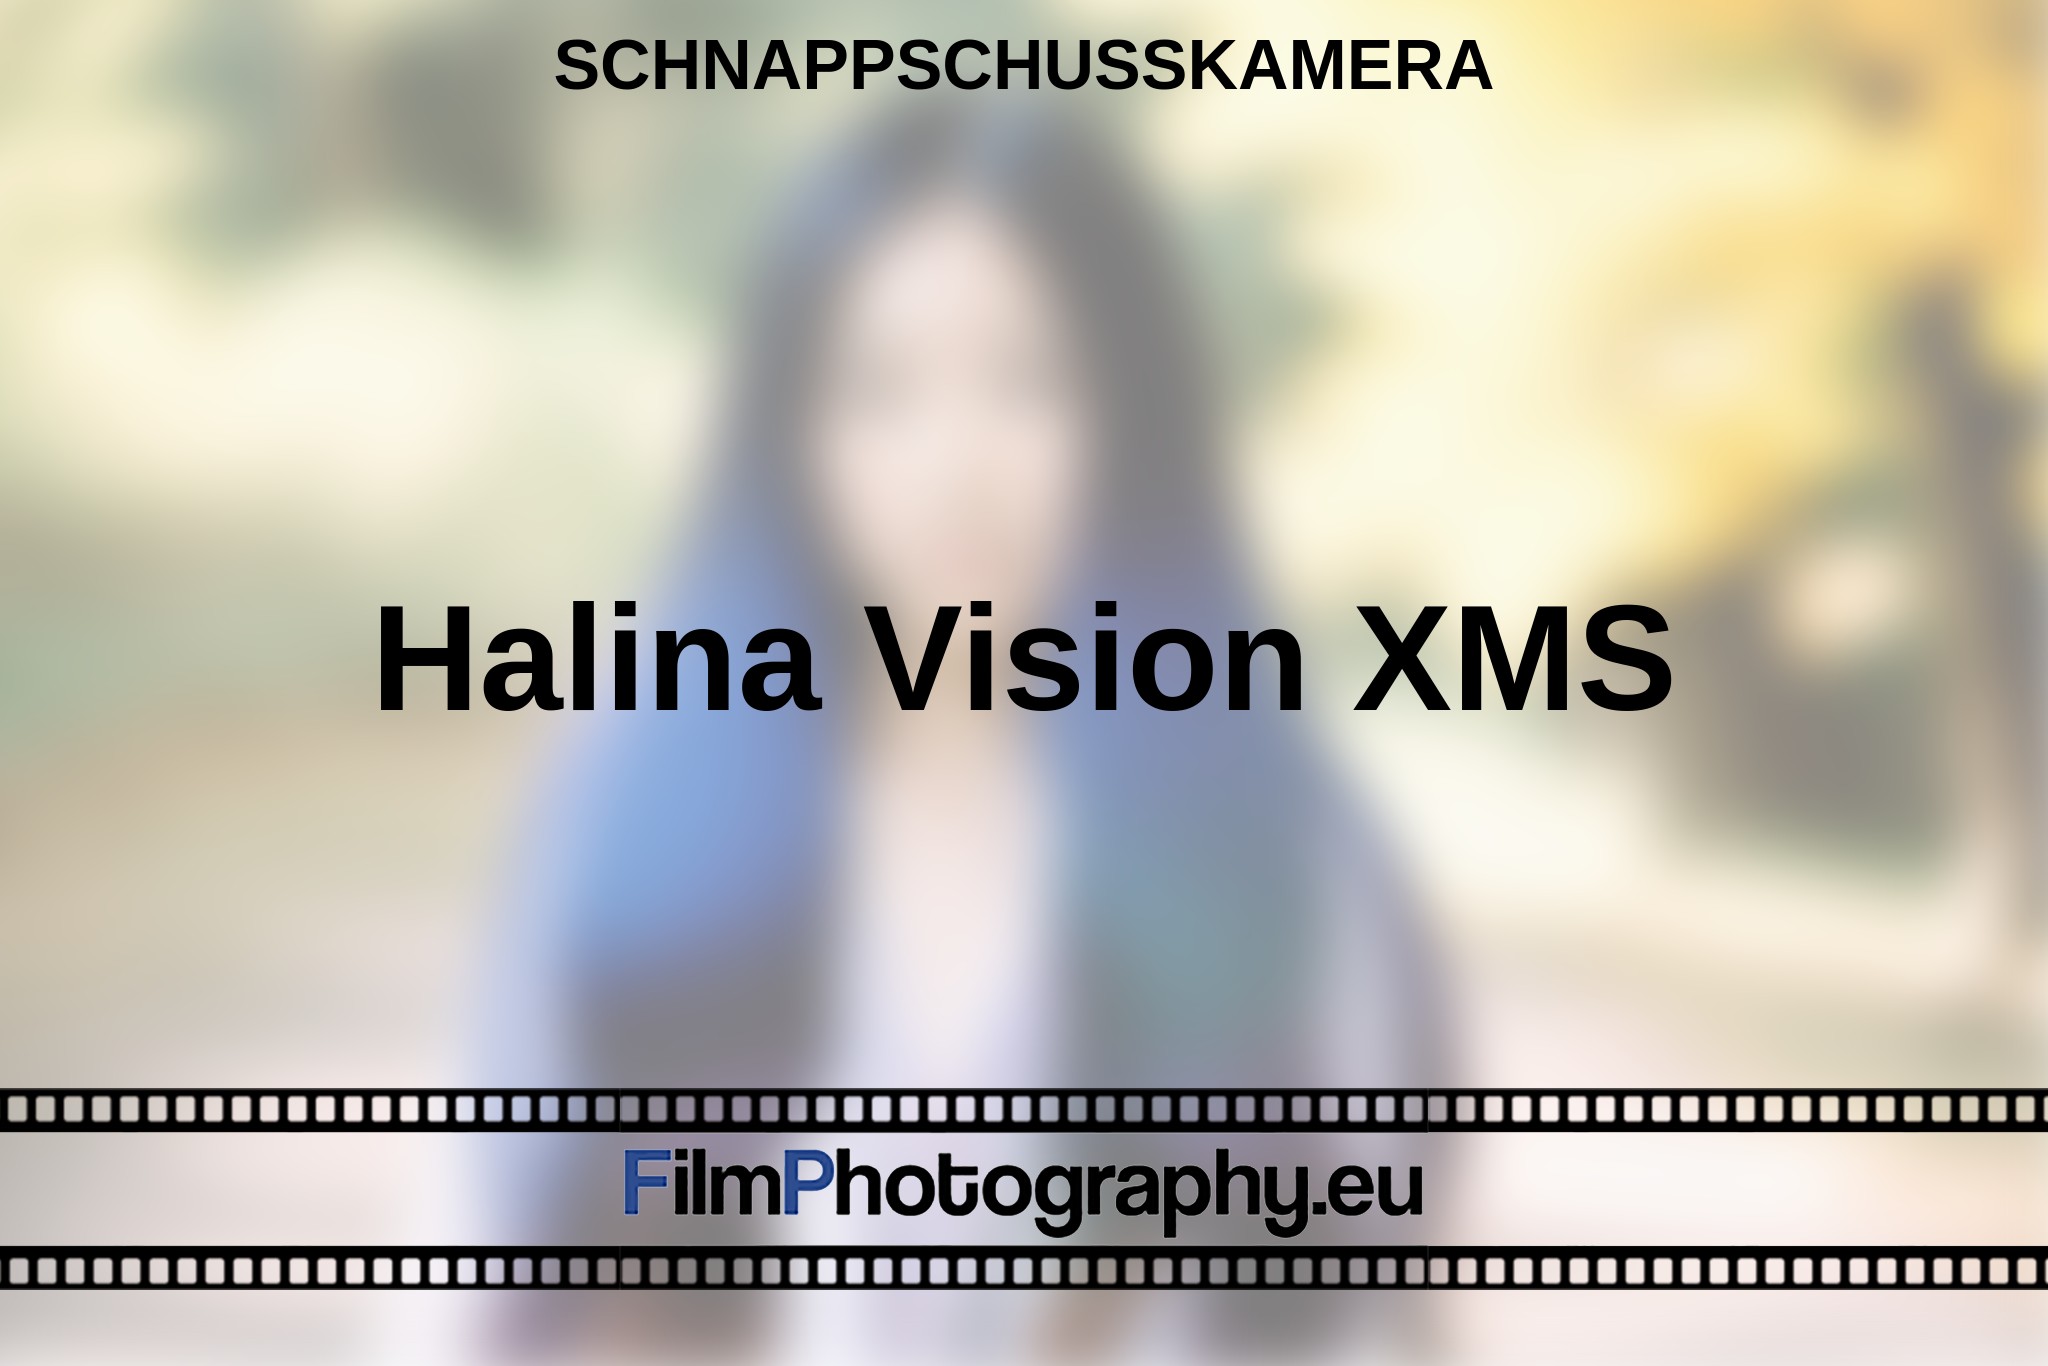 halina-vision-xms-schnappschusskamera-bnv.jpg